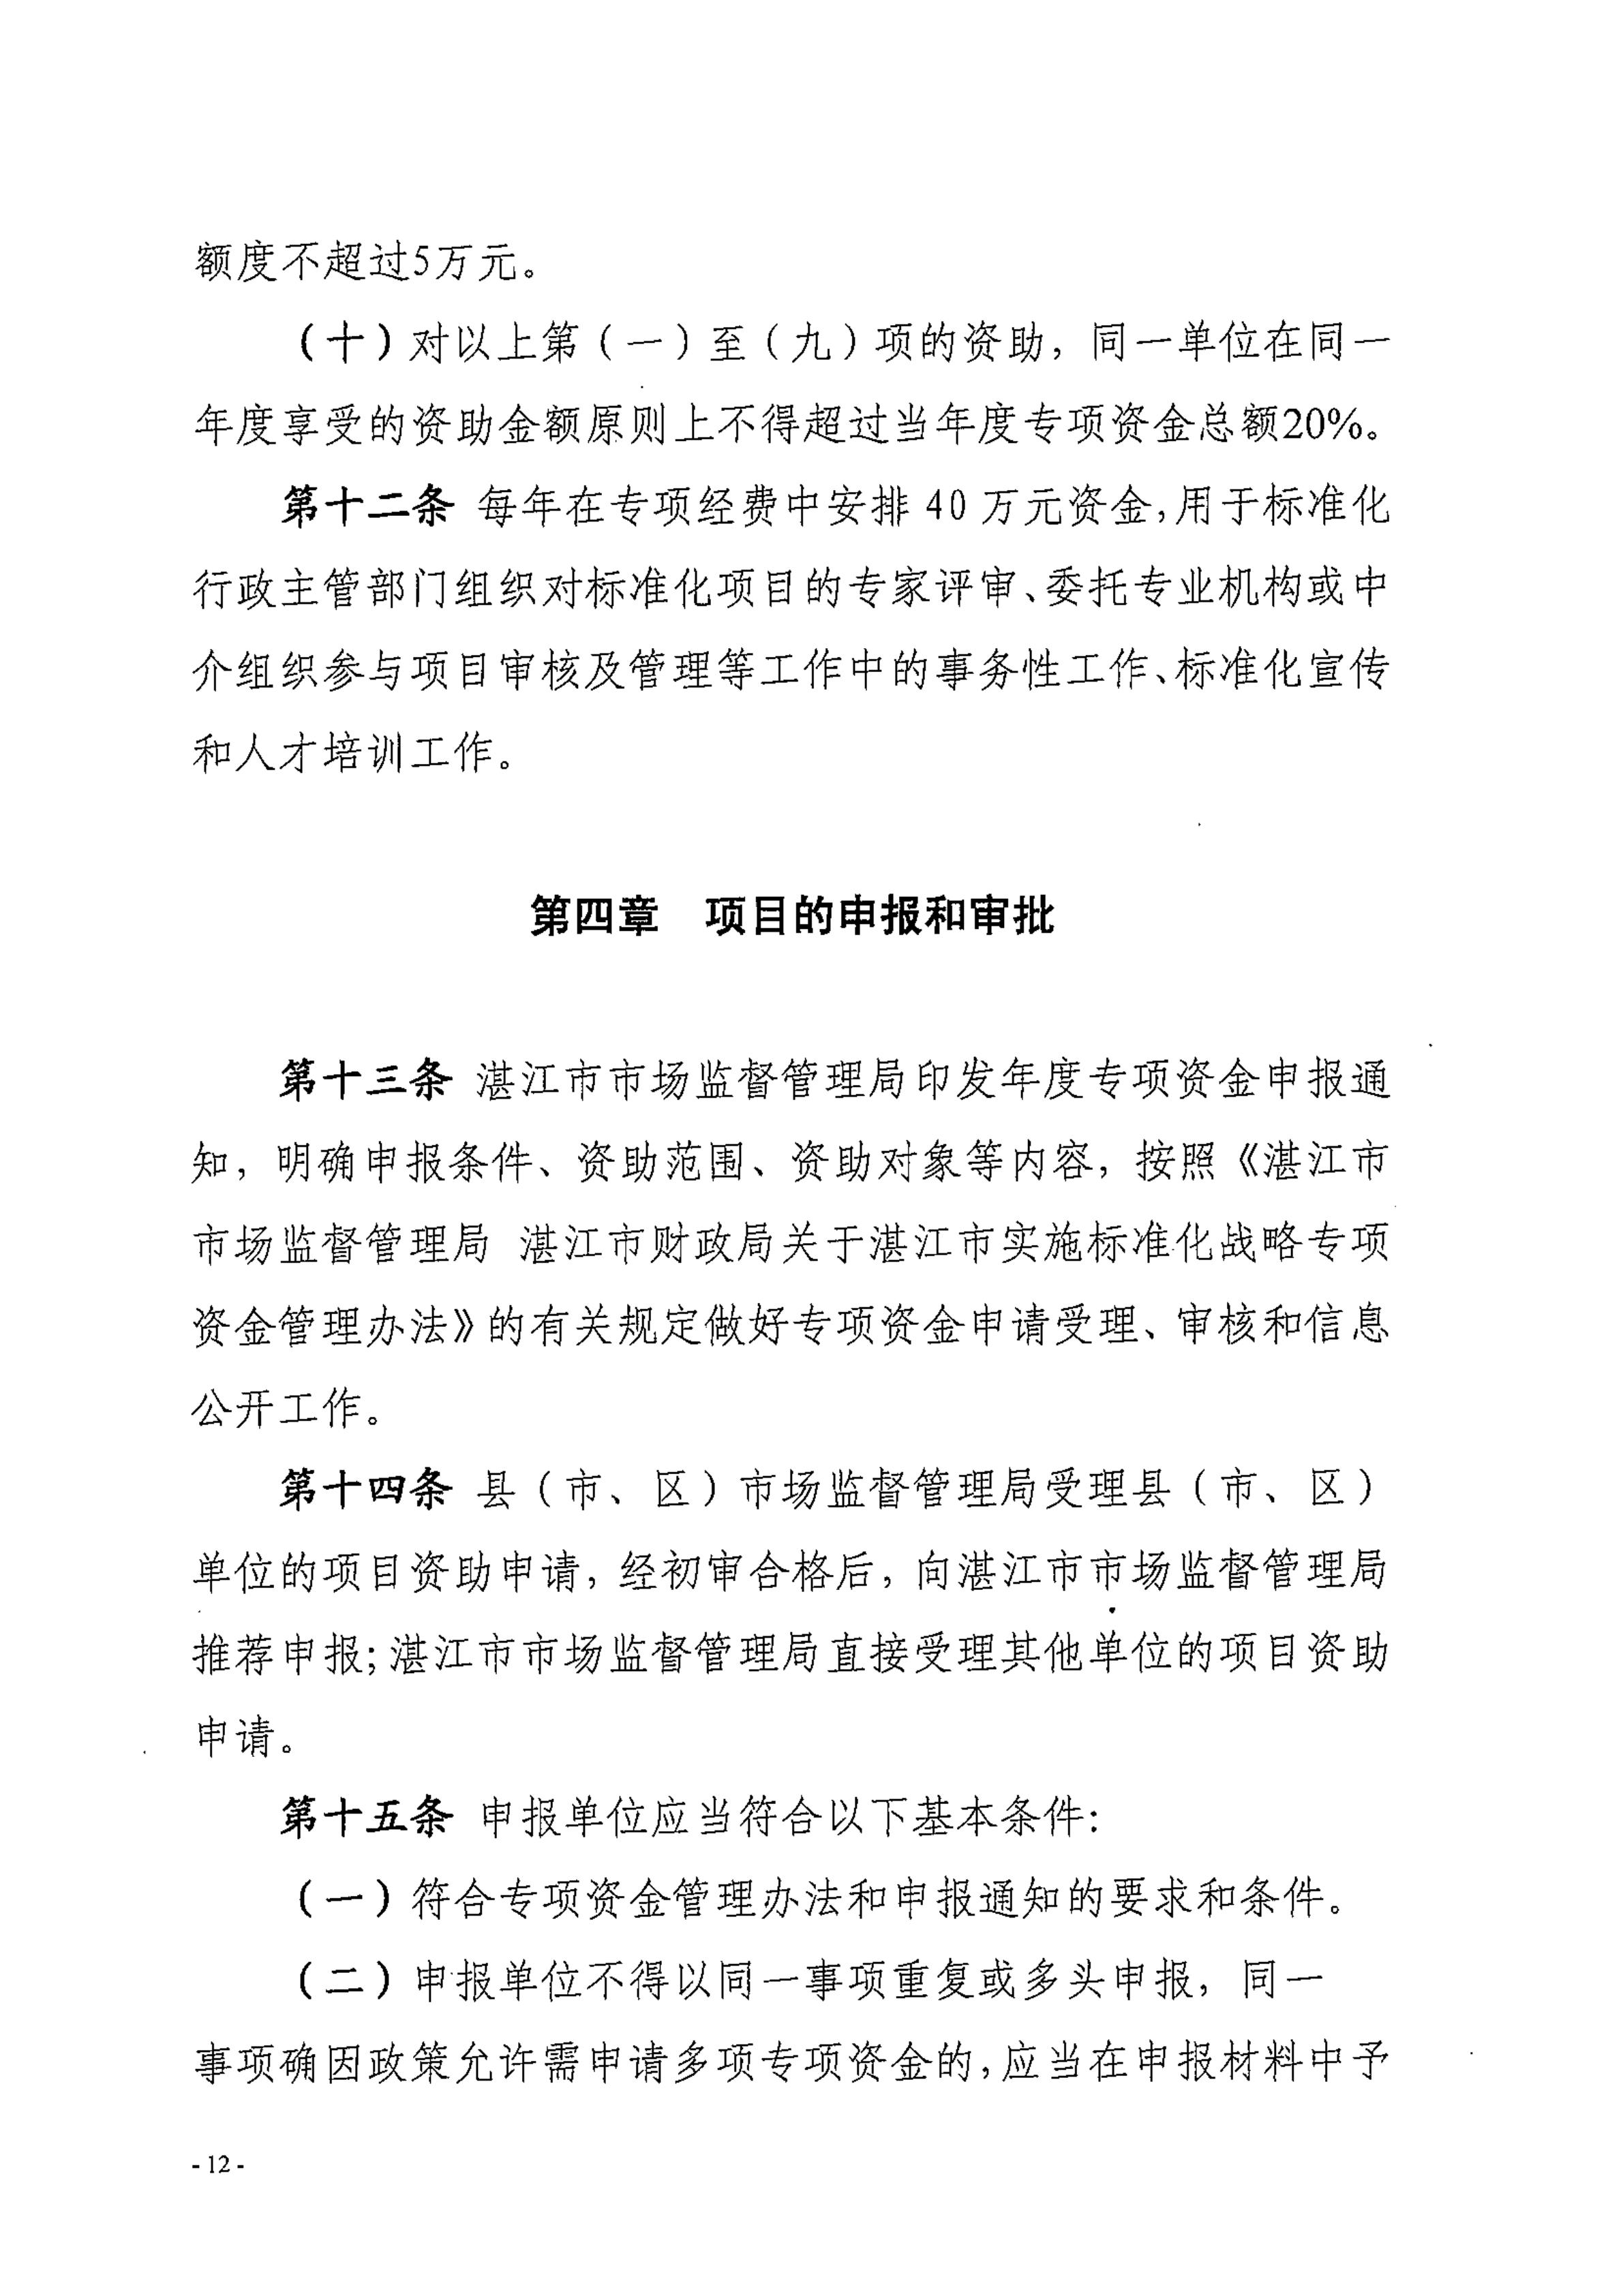 湛江市市场监督管理局湛江市财政局关于印发修改《湛江市实施标准化战略专项资金管理办法》（湛部规2021-24）标题的通知_11.jpg